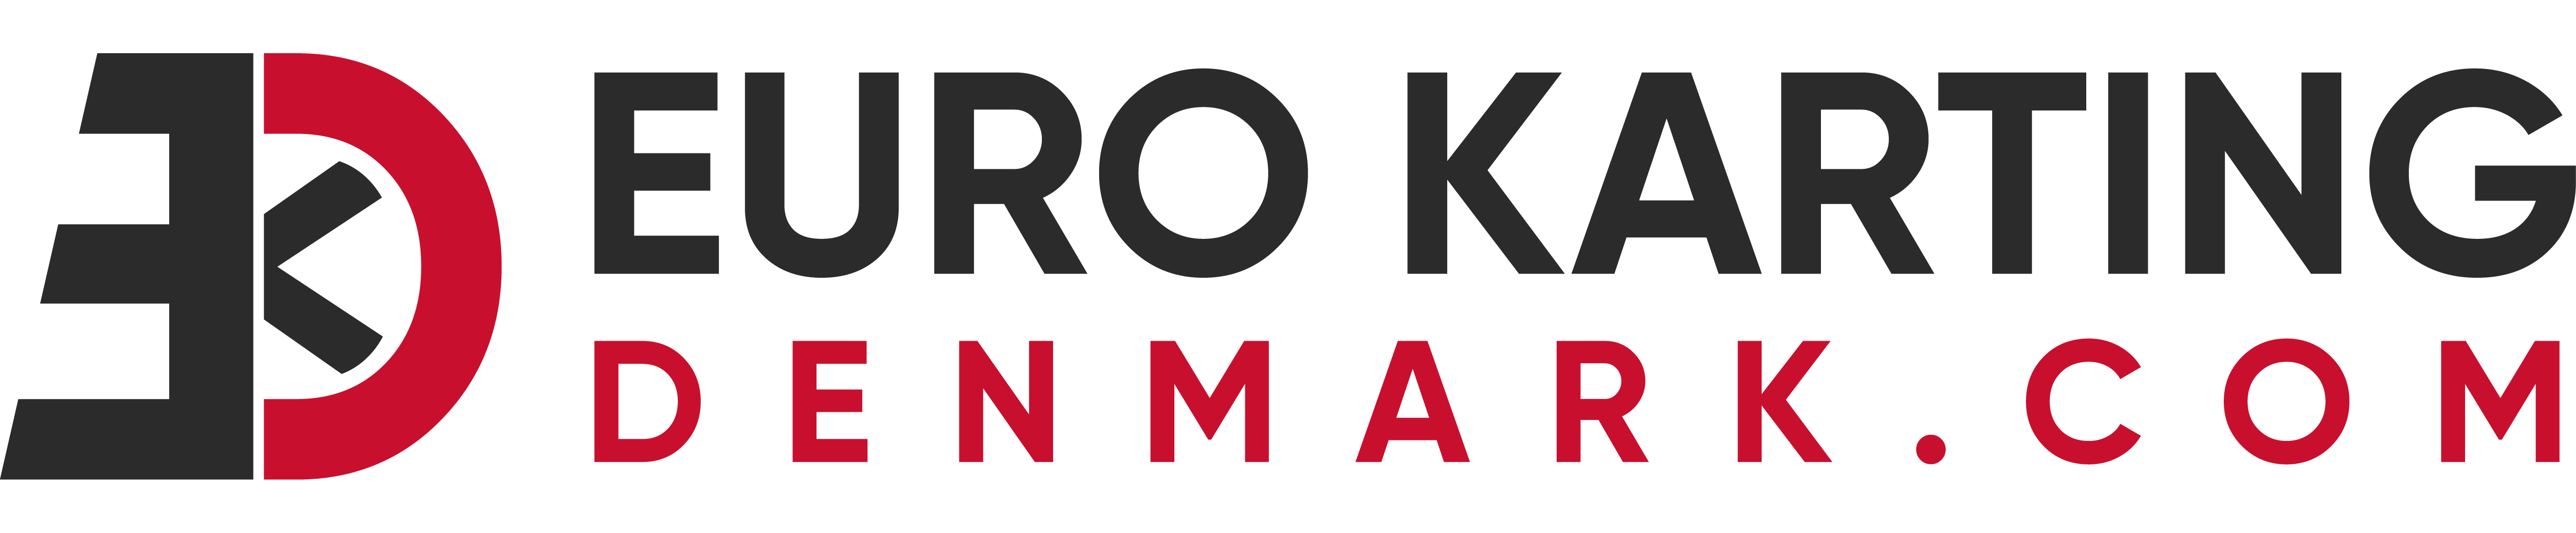 euro-karting-denmark-com-logo